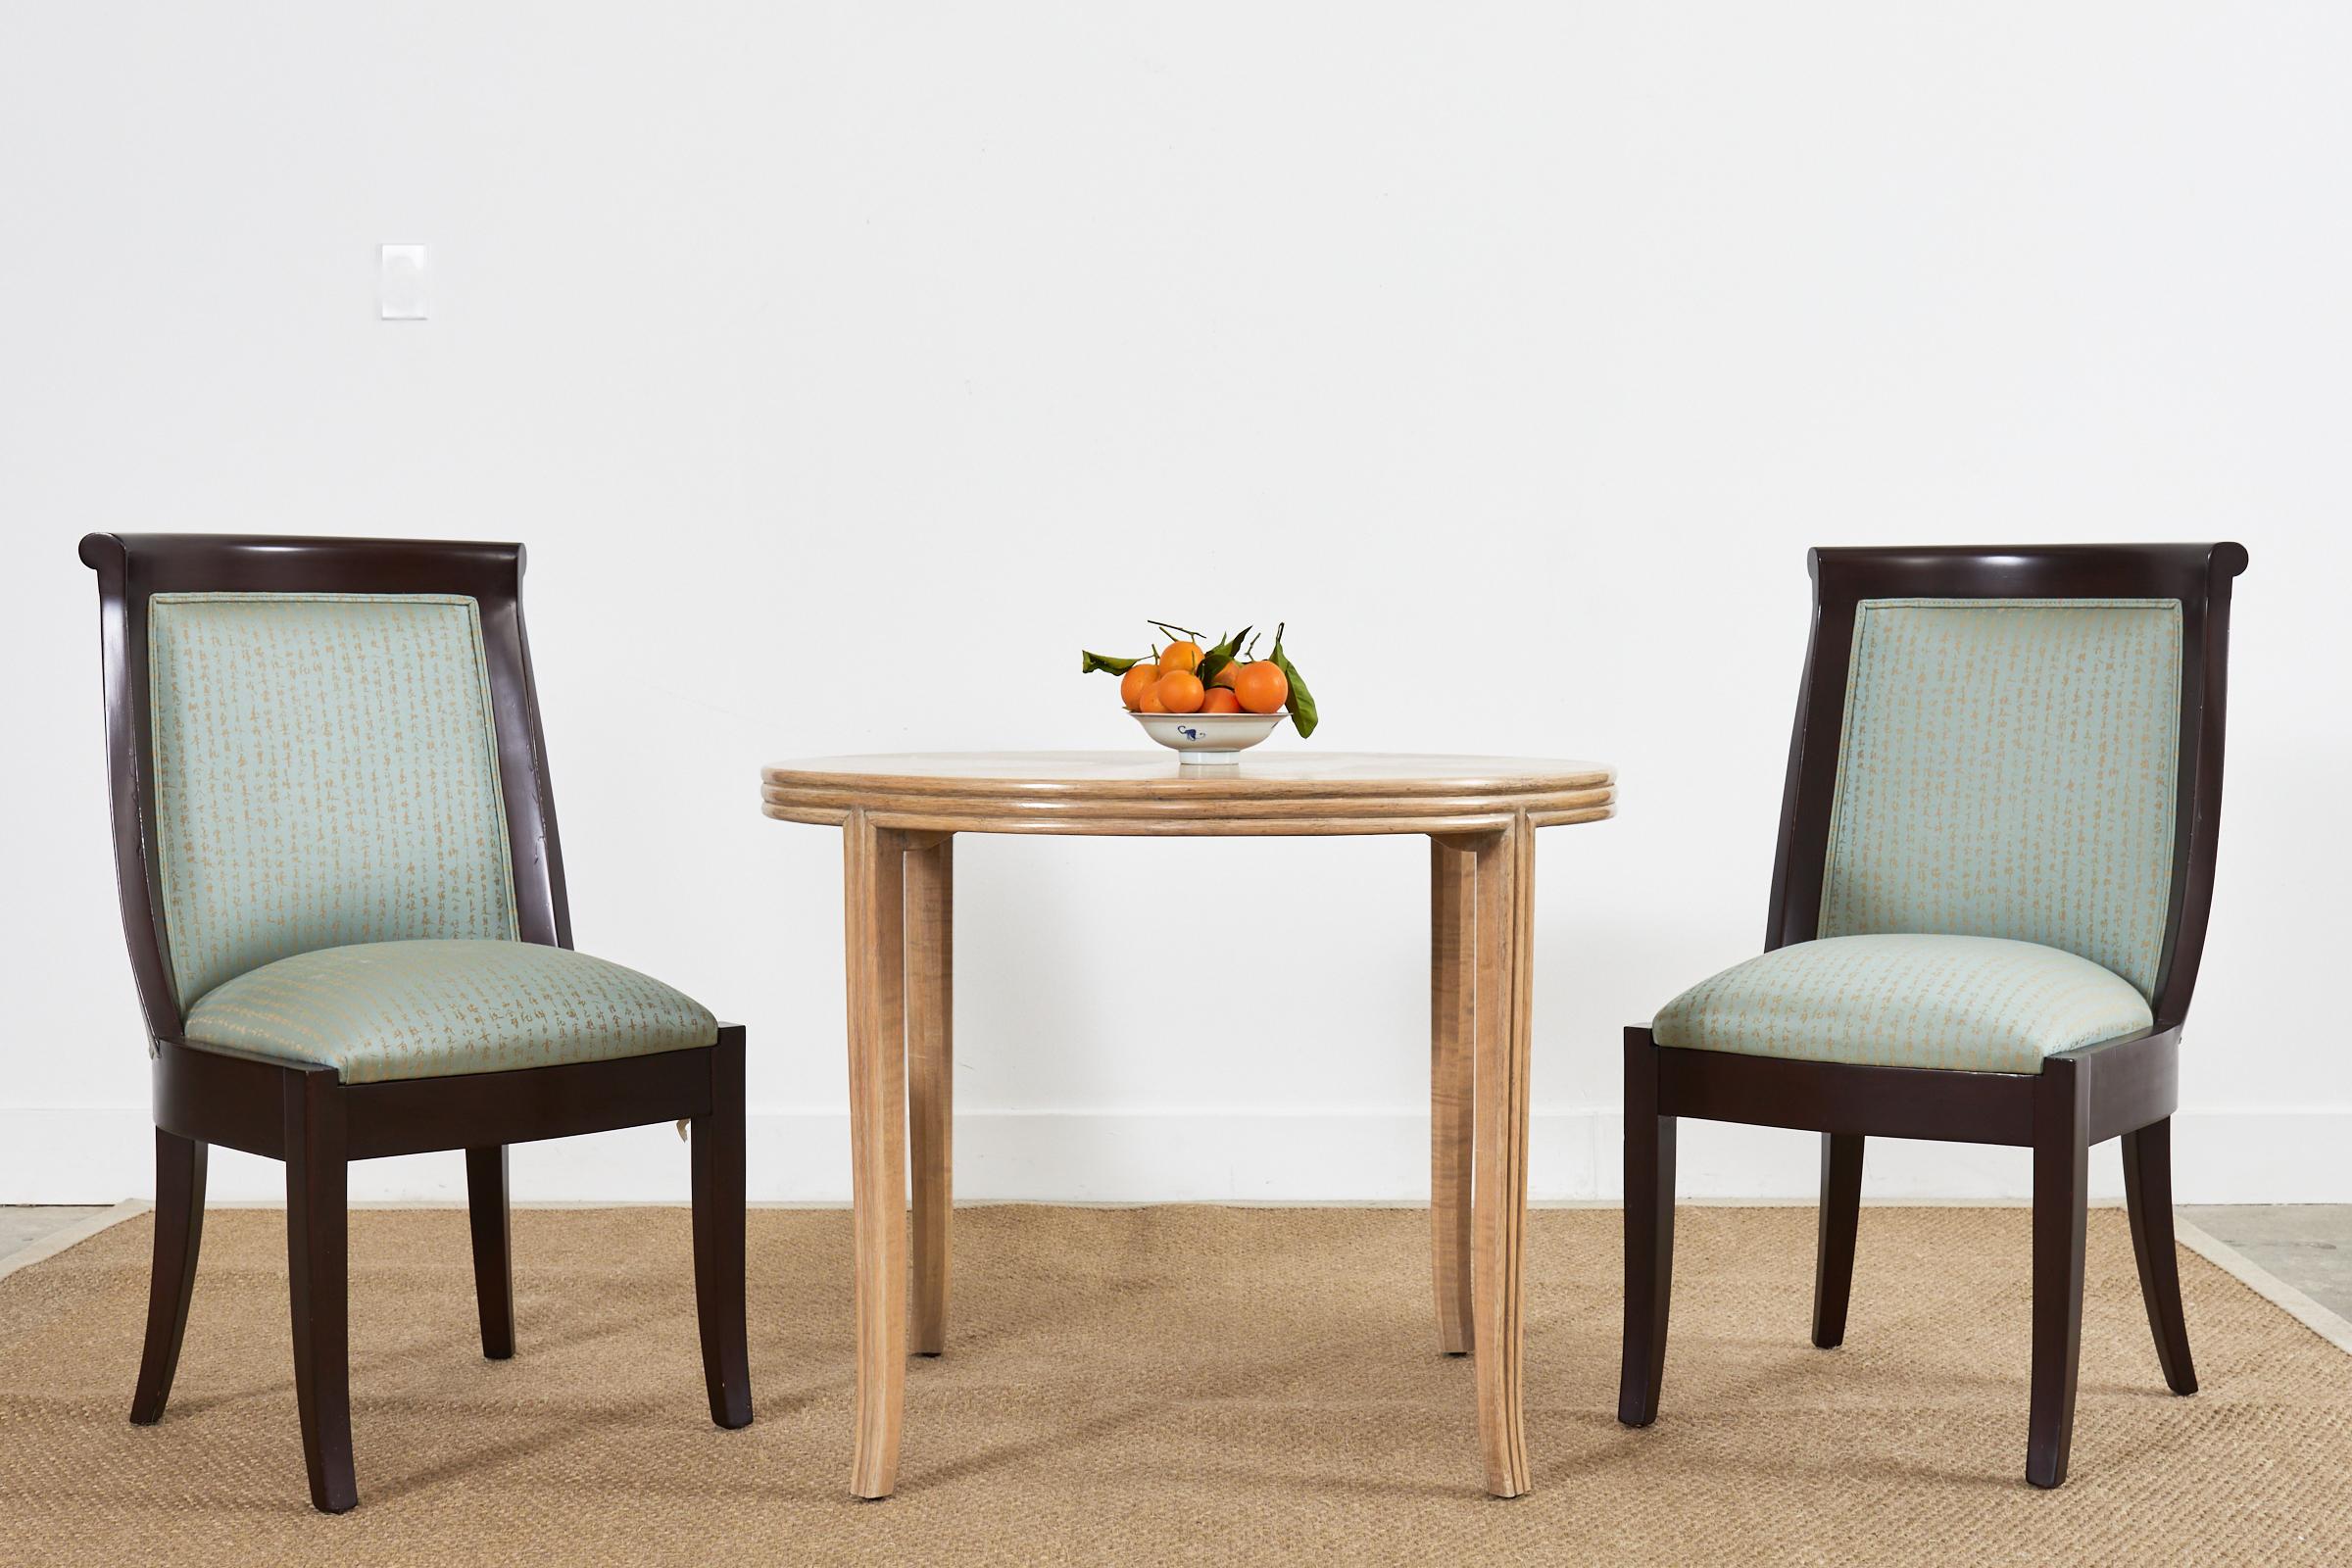 Fantastique ensemble de huit chaises de salle à manger en bois dur de style régence moderne avec un dossier à volutes. Ensemble de chaises sur mesure fabriquées en Espagne à partir du centre de design de San Francisco, avec une finition laquée